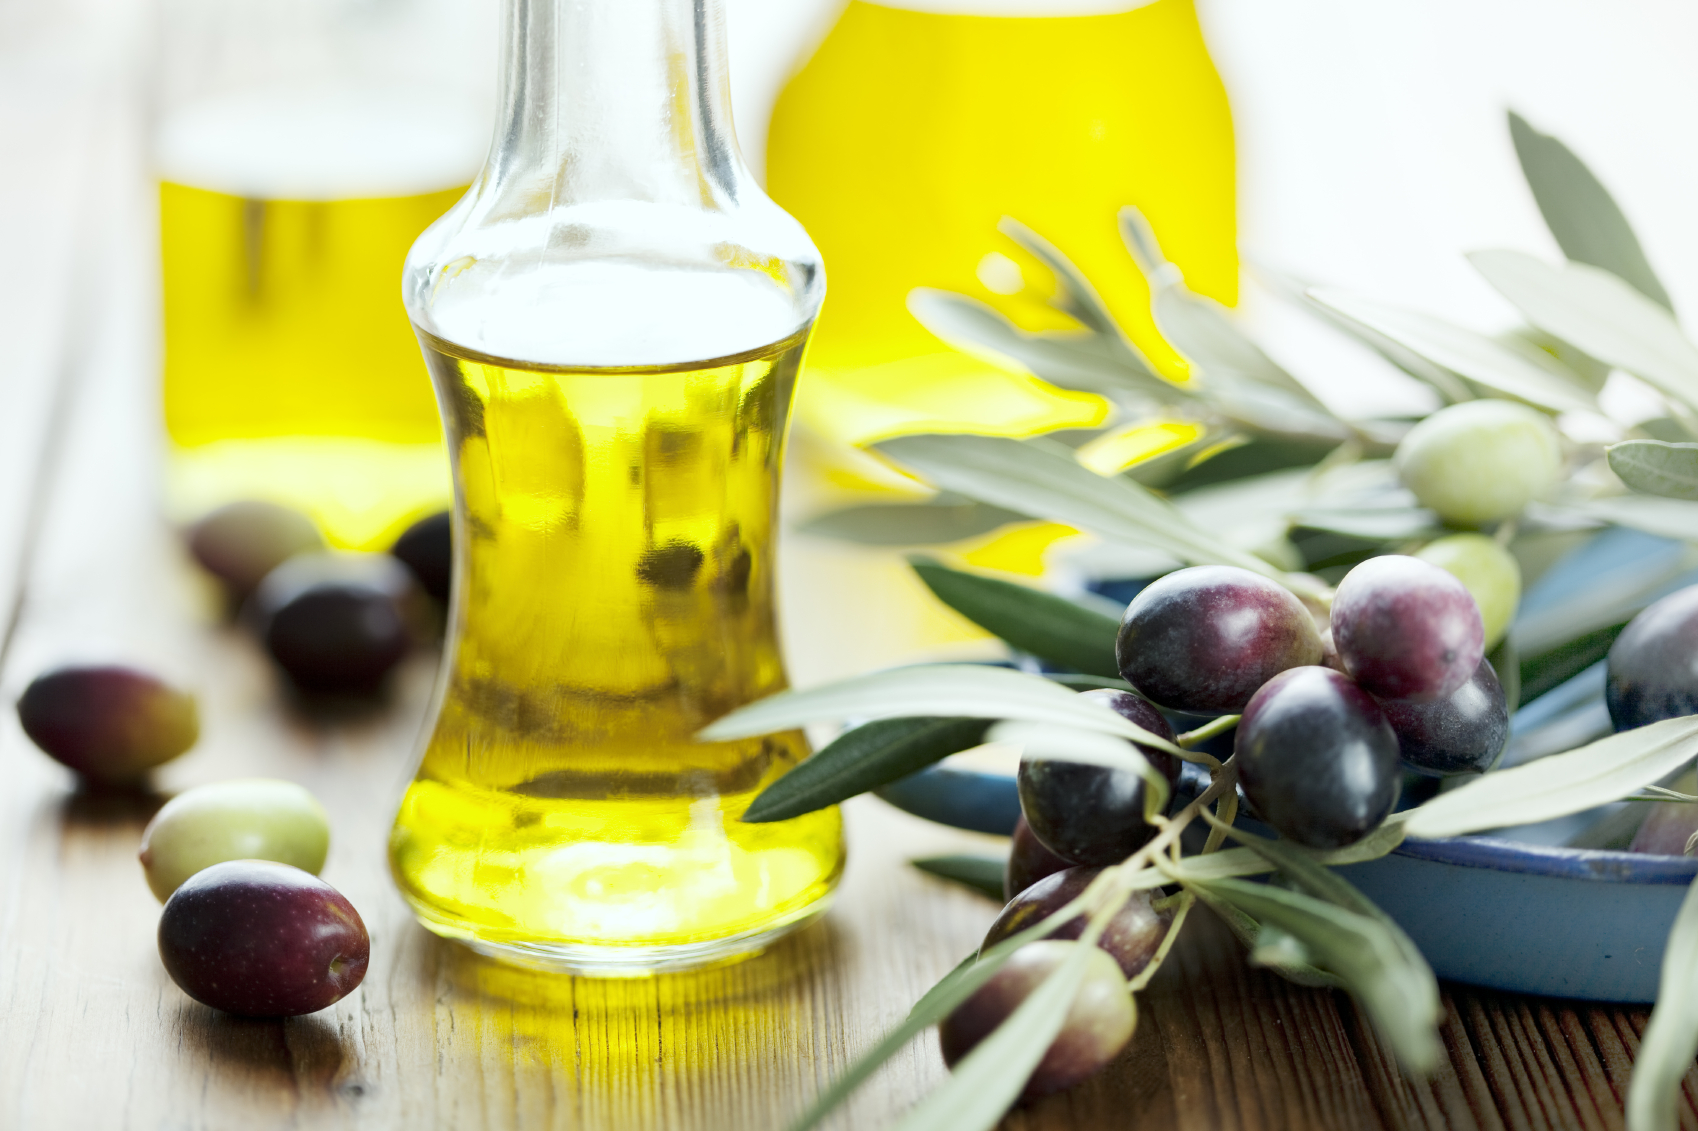 Falso olio di oliva extravergine, si indaga per frode